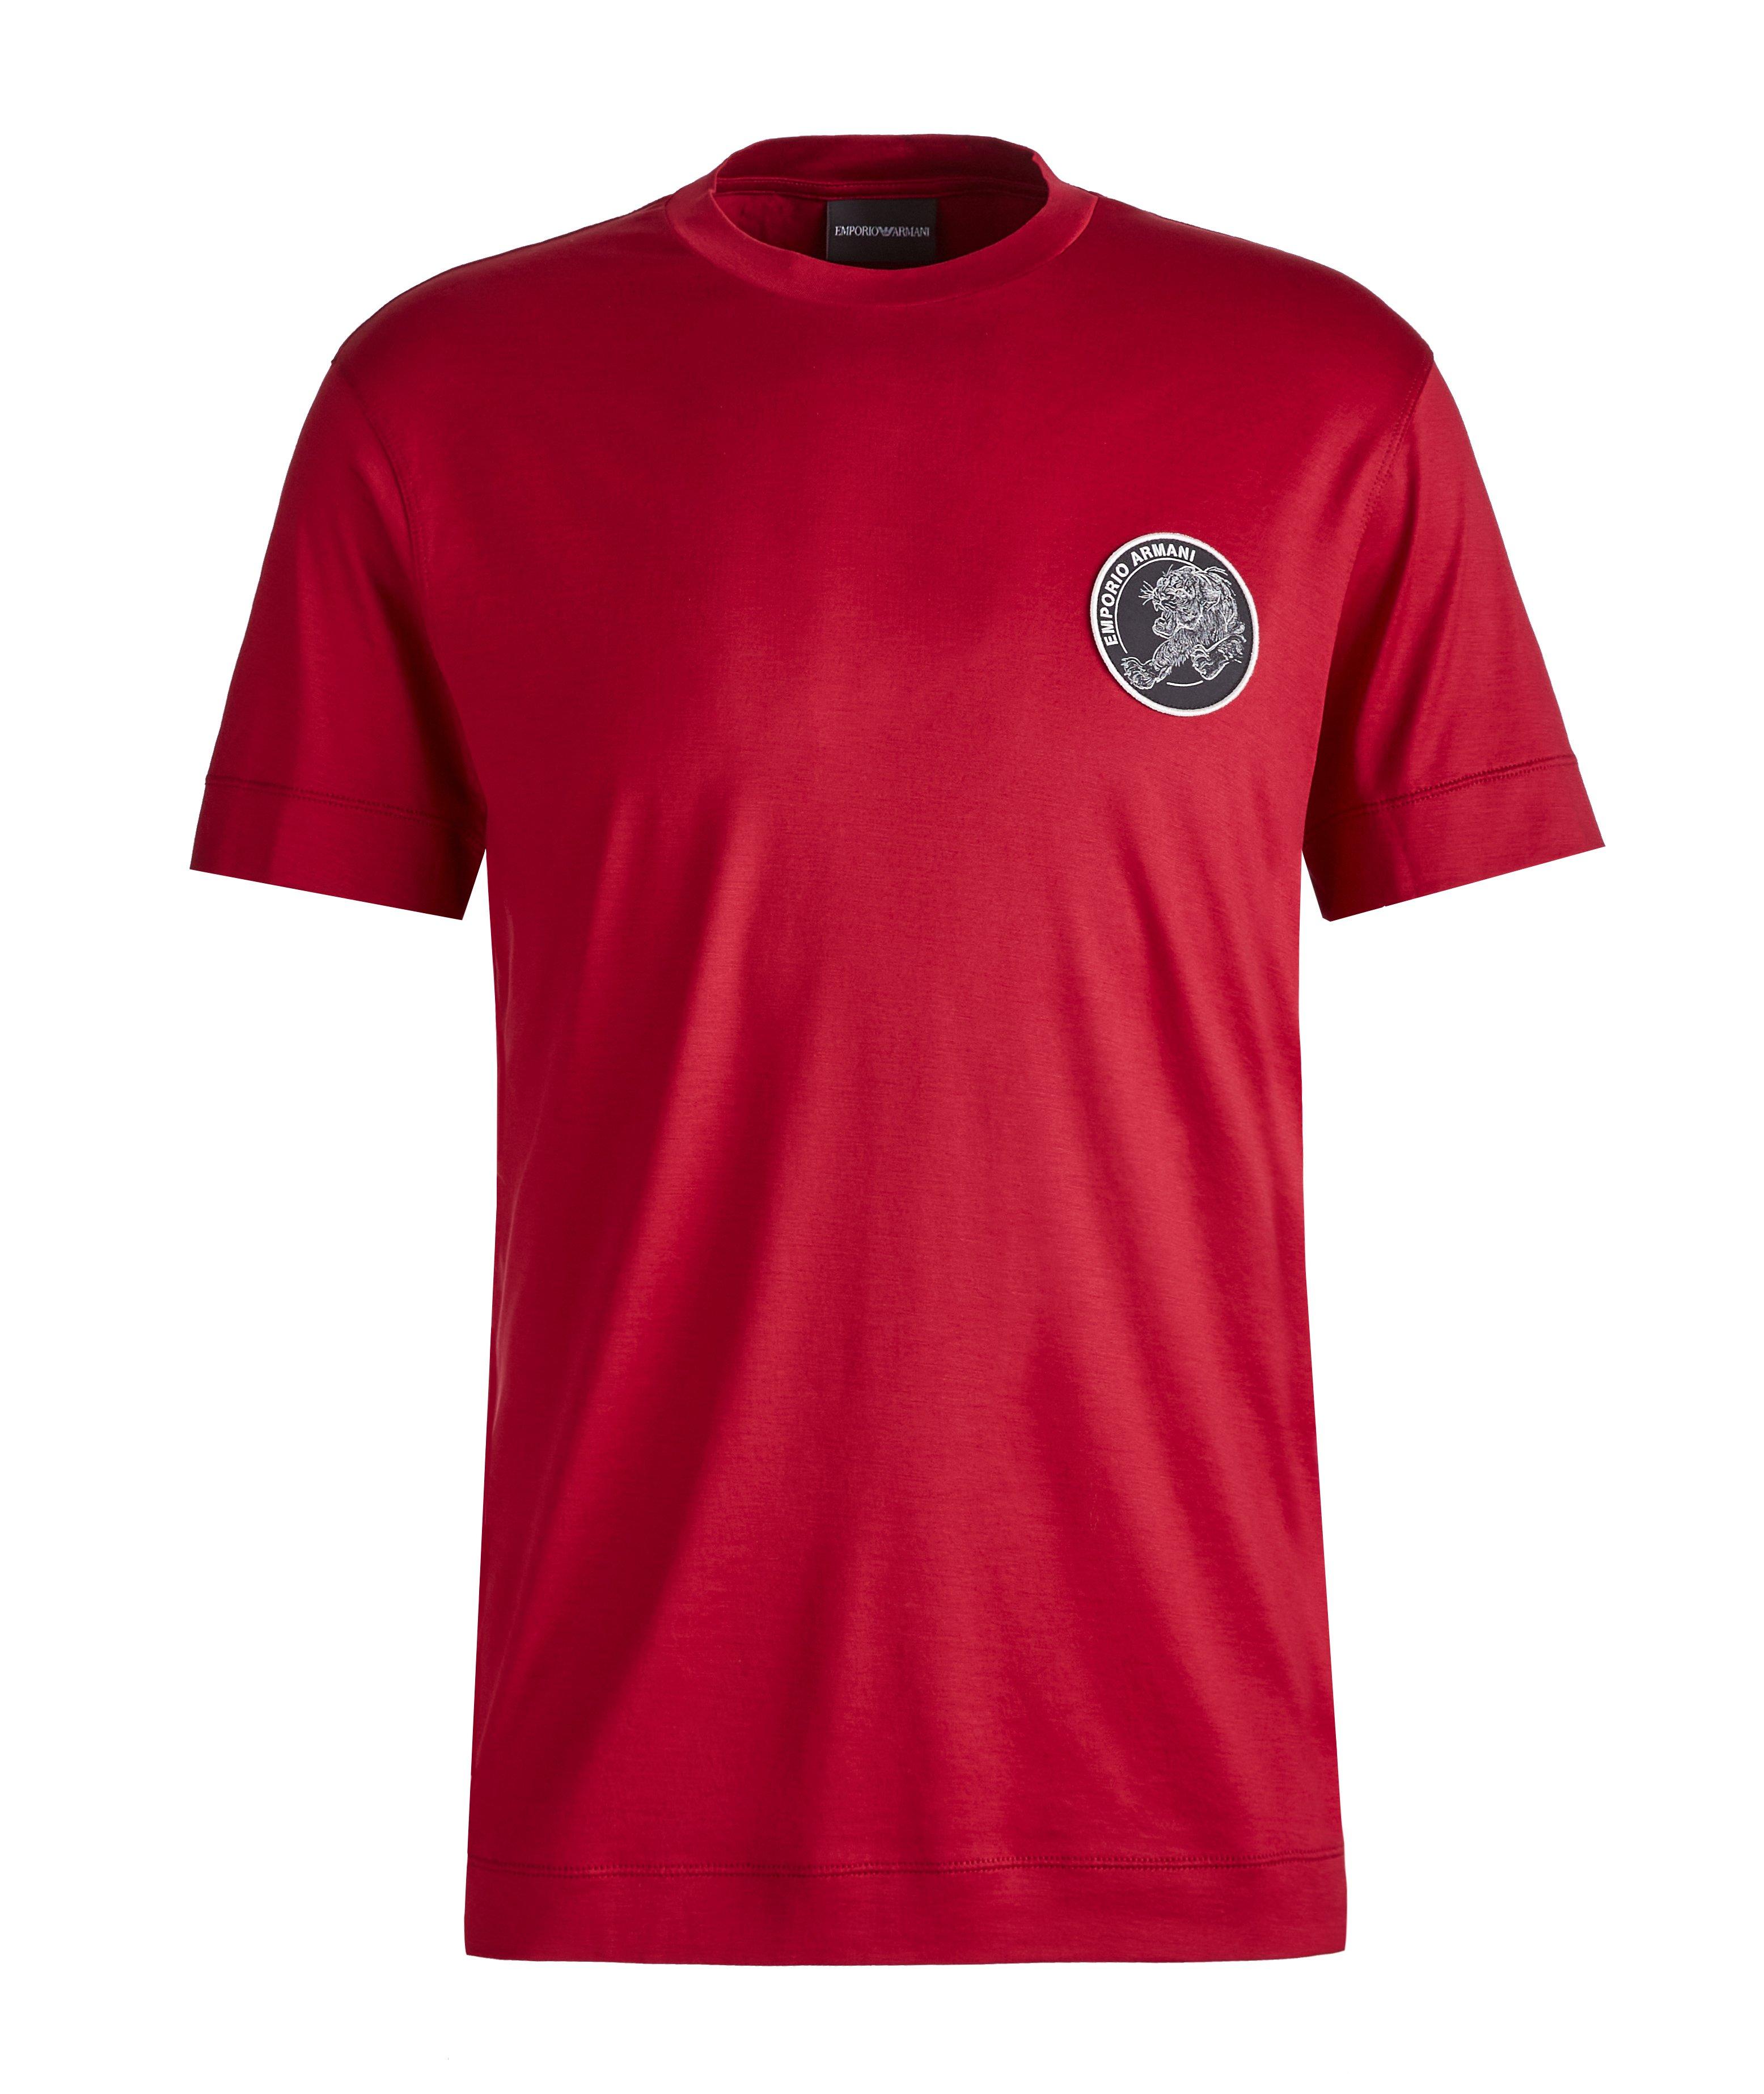 T-shirt de l’année du Tigre en coton et lyocell image 0